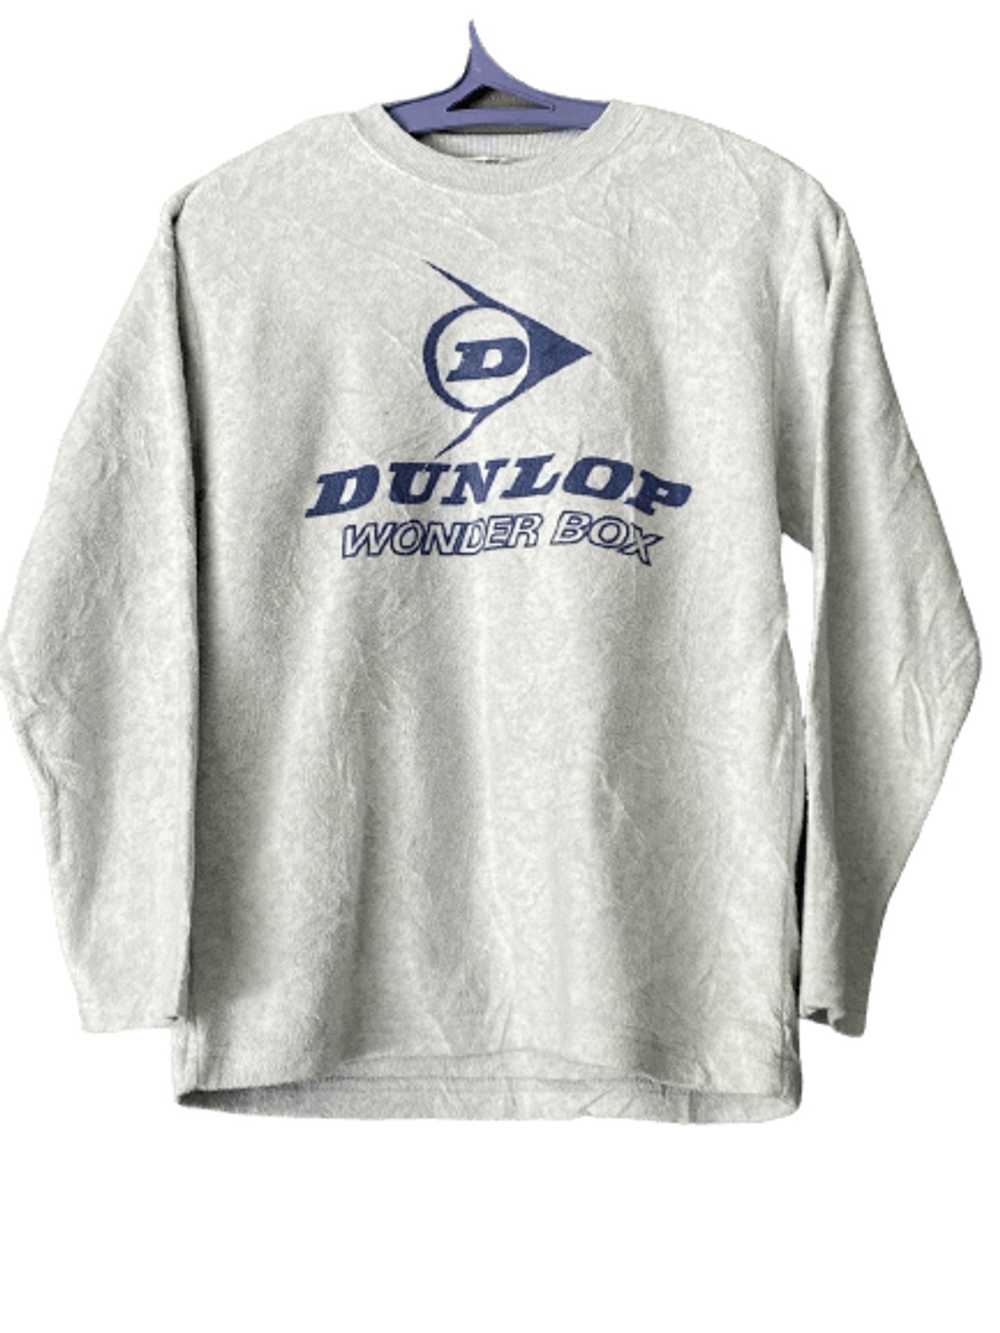 Dunlop × Vintage sweatshirt dunlop wonder box - image 1